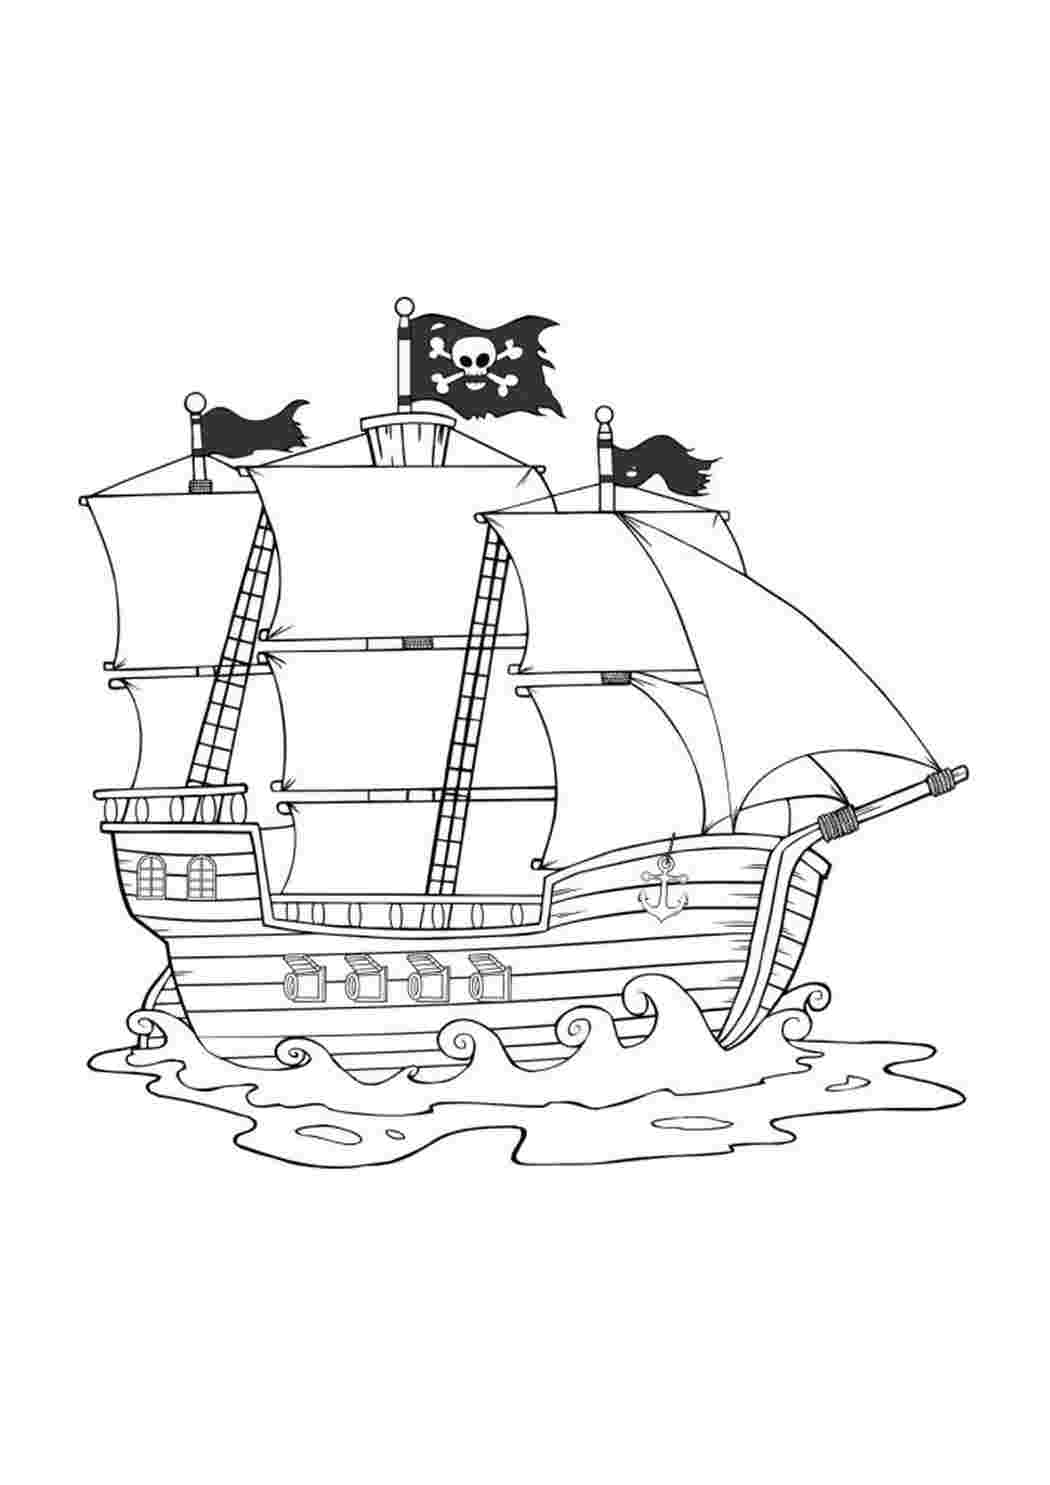 пиратский корабль картинки для детей